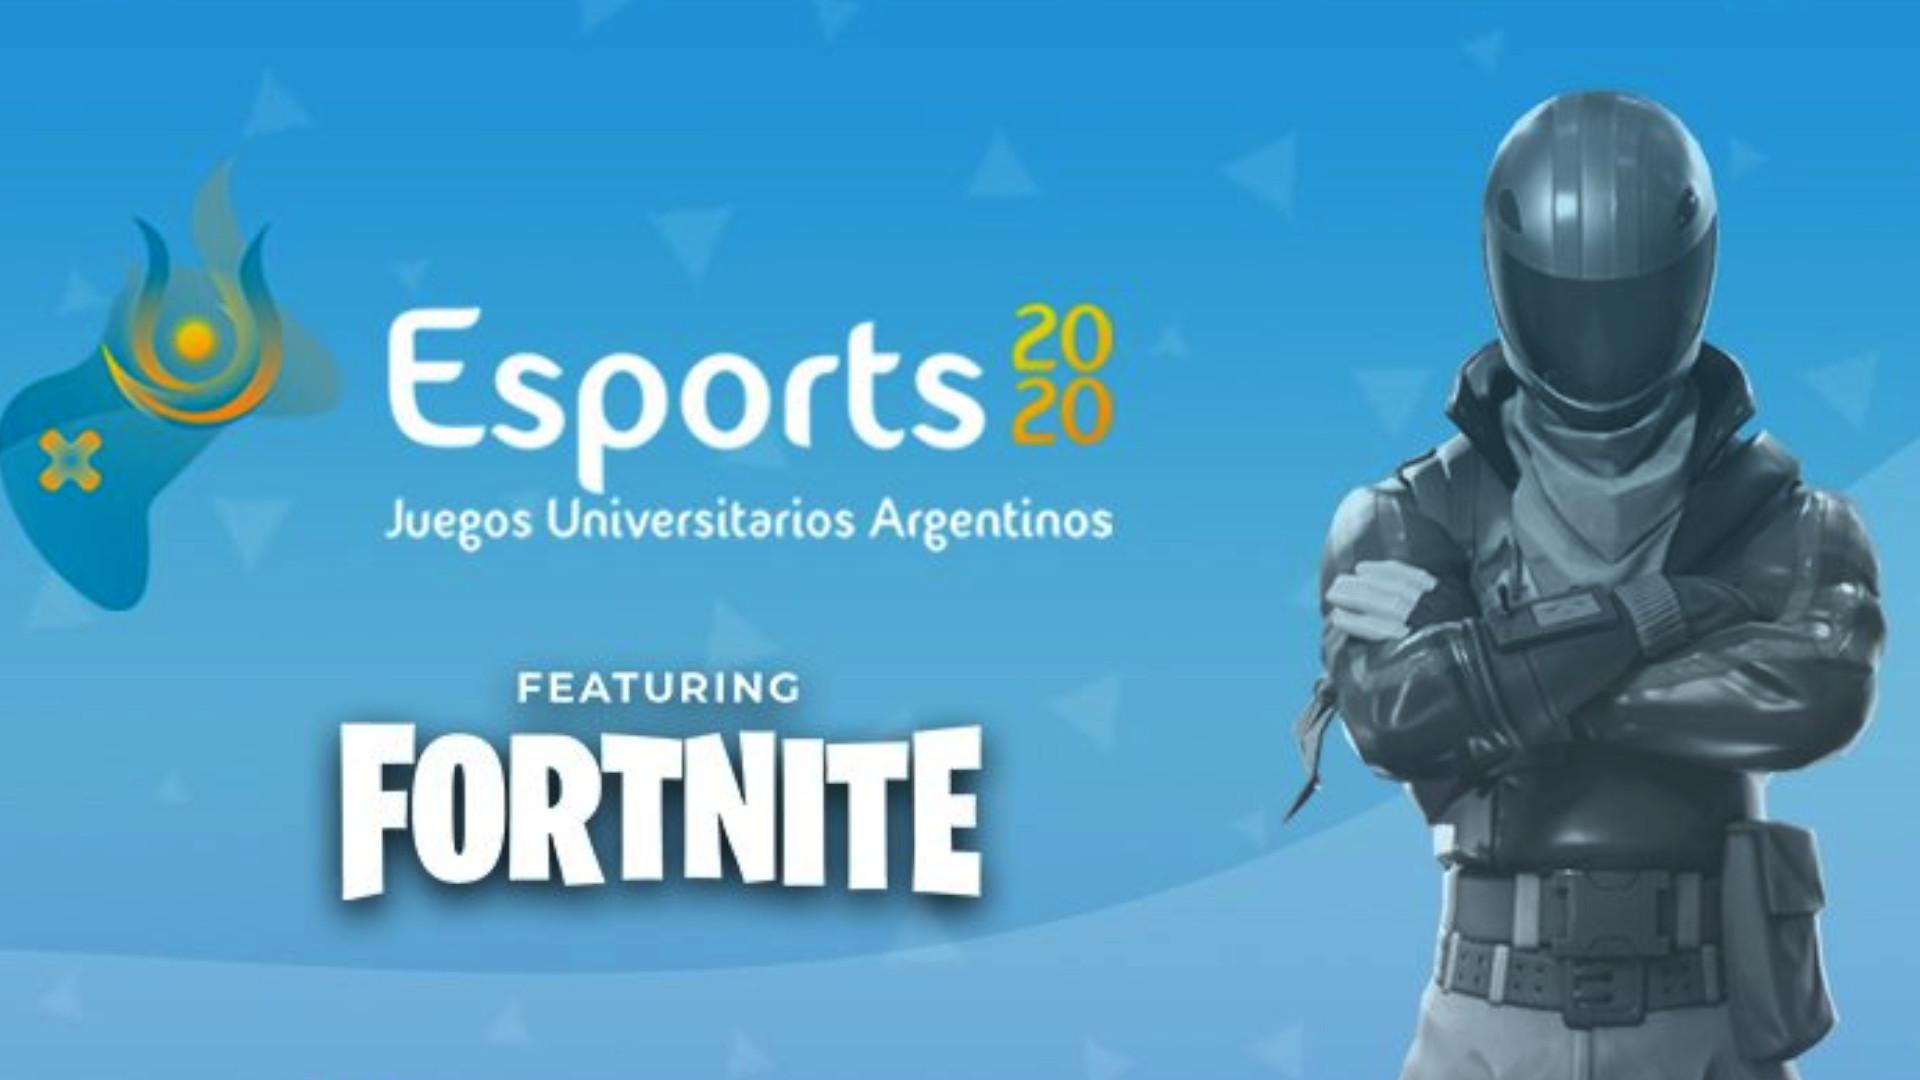 Los Esports llegaron a los Juegos Universitarios Argentinos EJUAR 2020